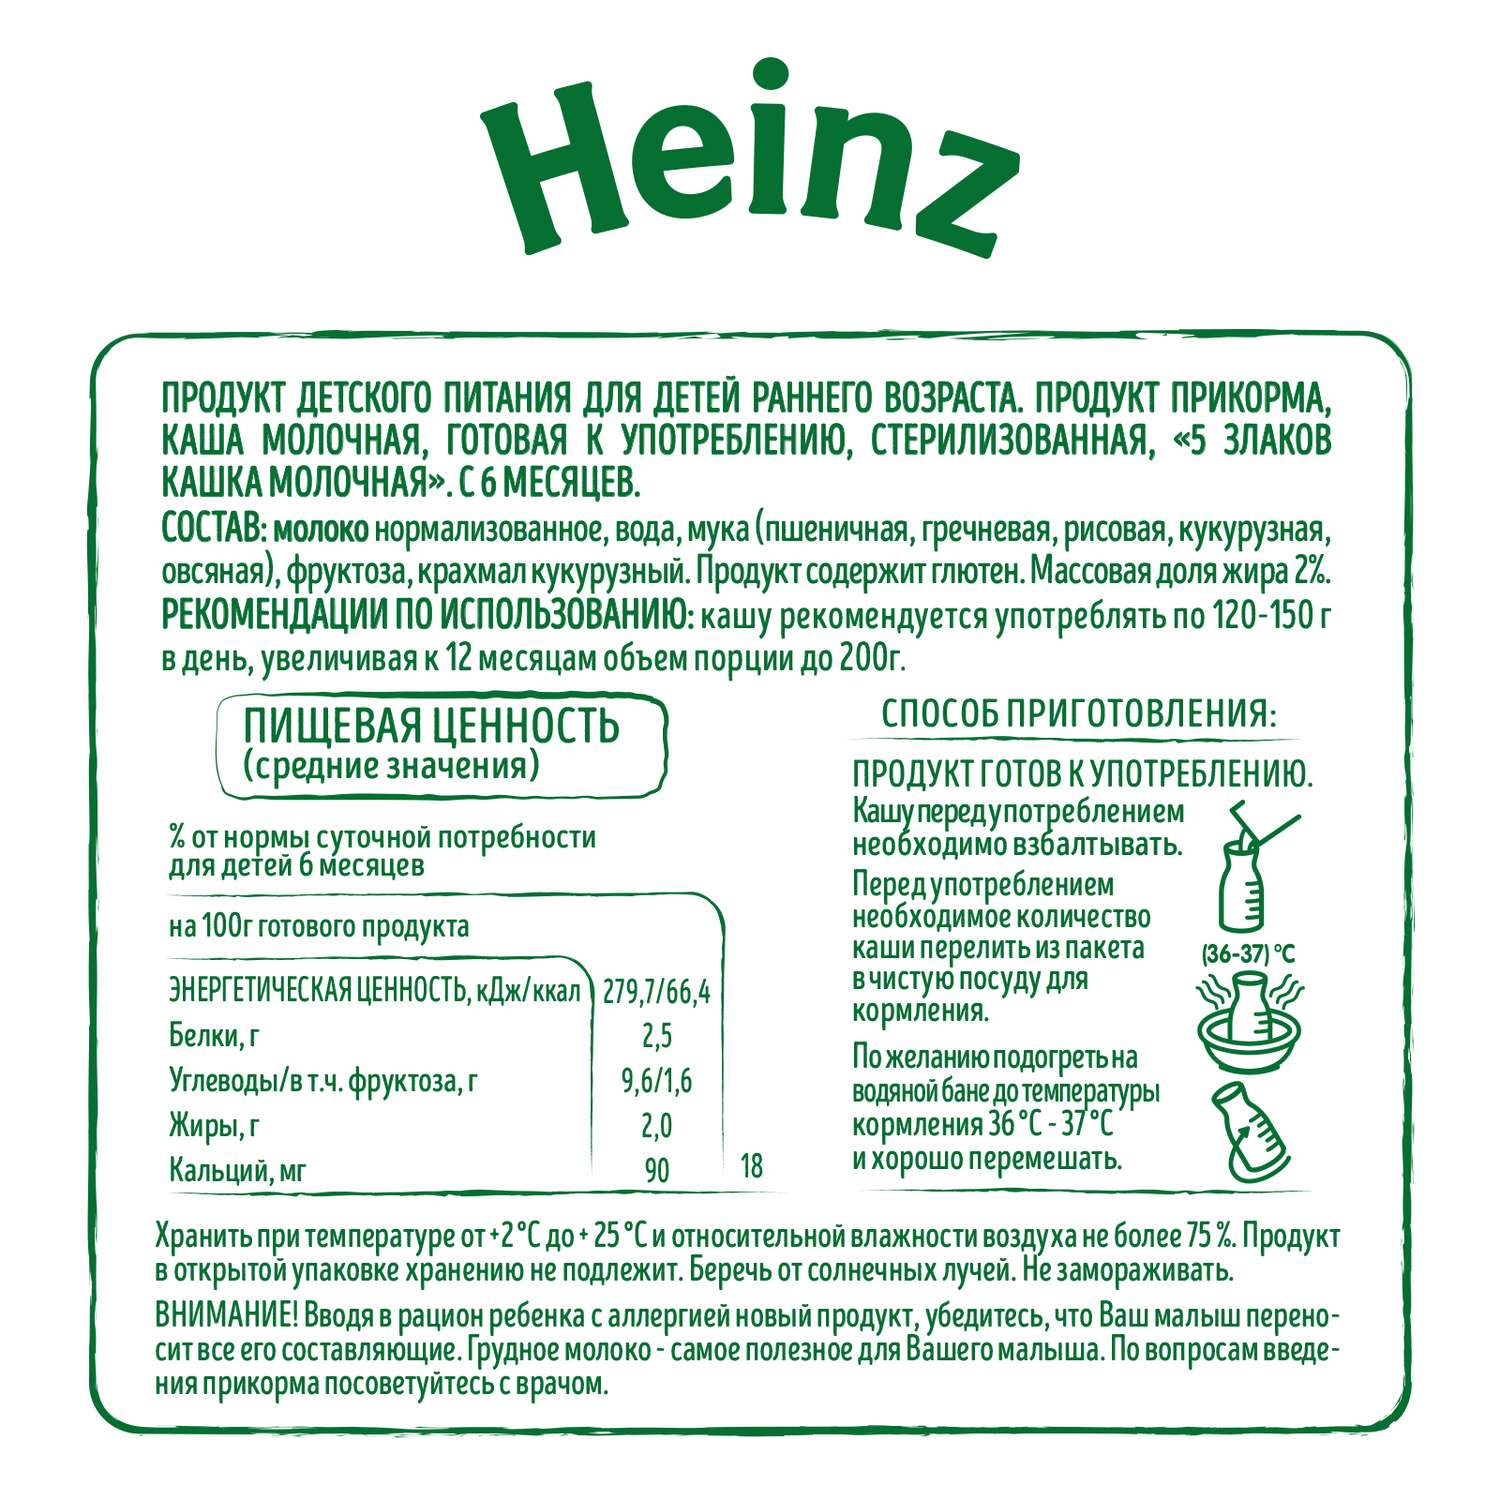 Каша молочная Heinz 5злаков 200мл с 6месяцев - фото 3